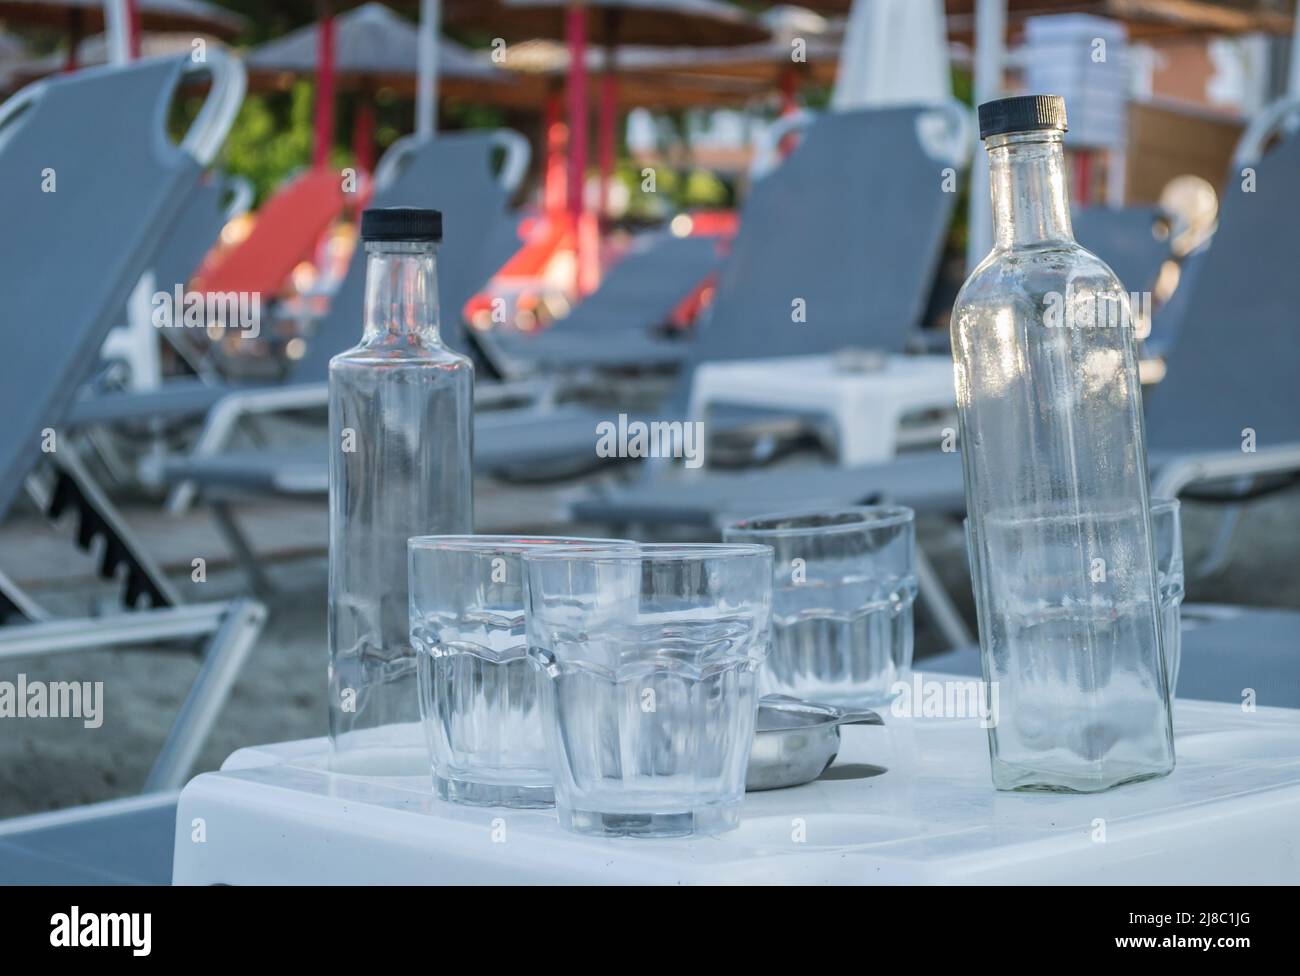 Ein kleiner ruhiger Touristenort Leptokarya in Griechenland. Leere Glaswasserflaschen und Trinkgläser auf einem Tisch in Griechenland. Stockfoto